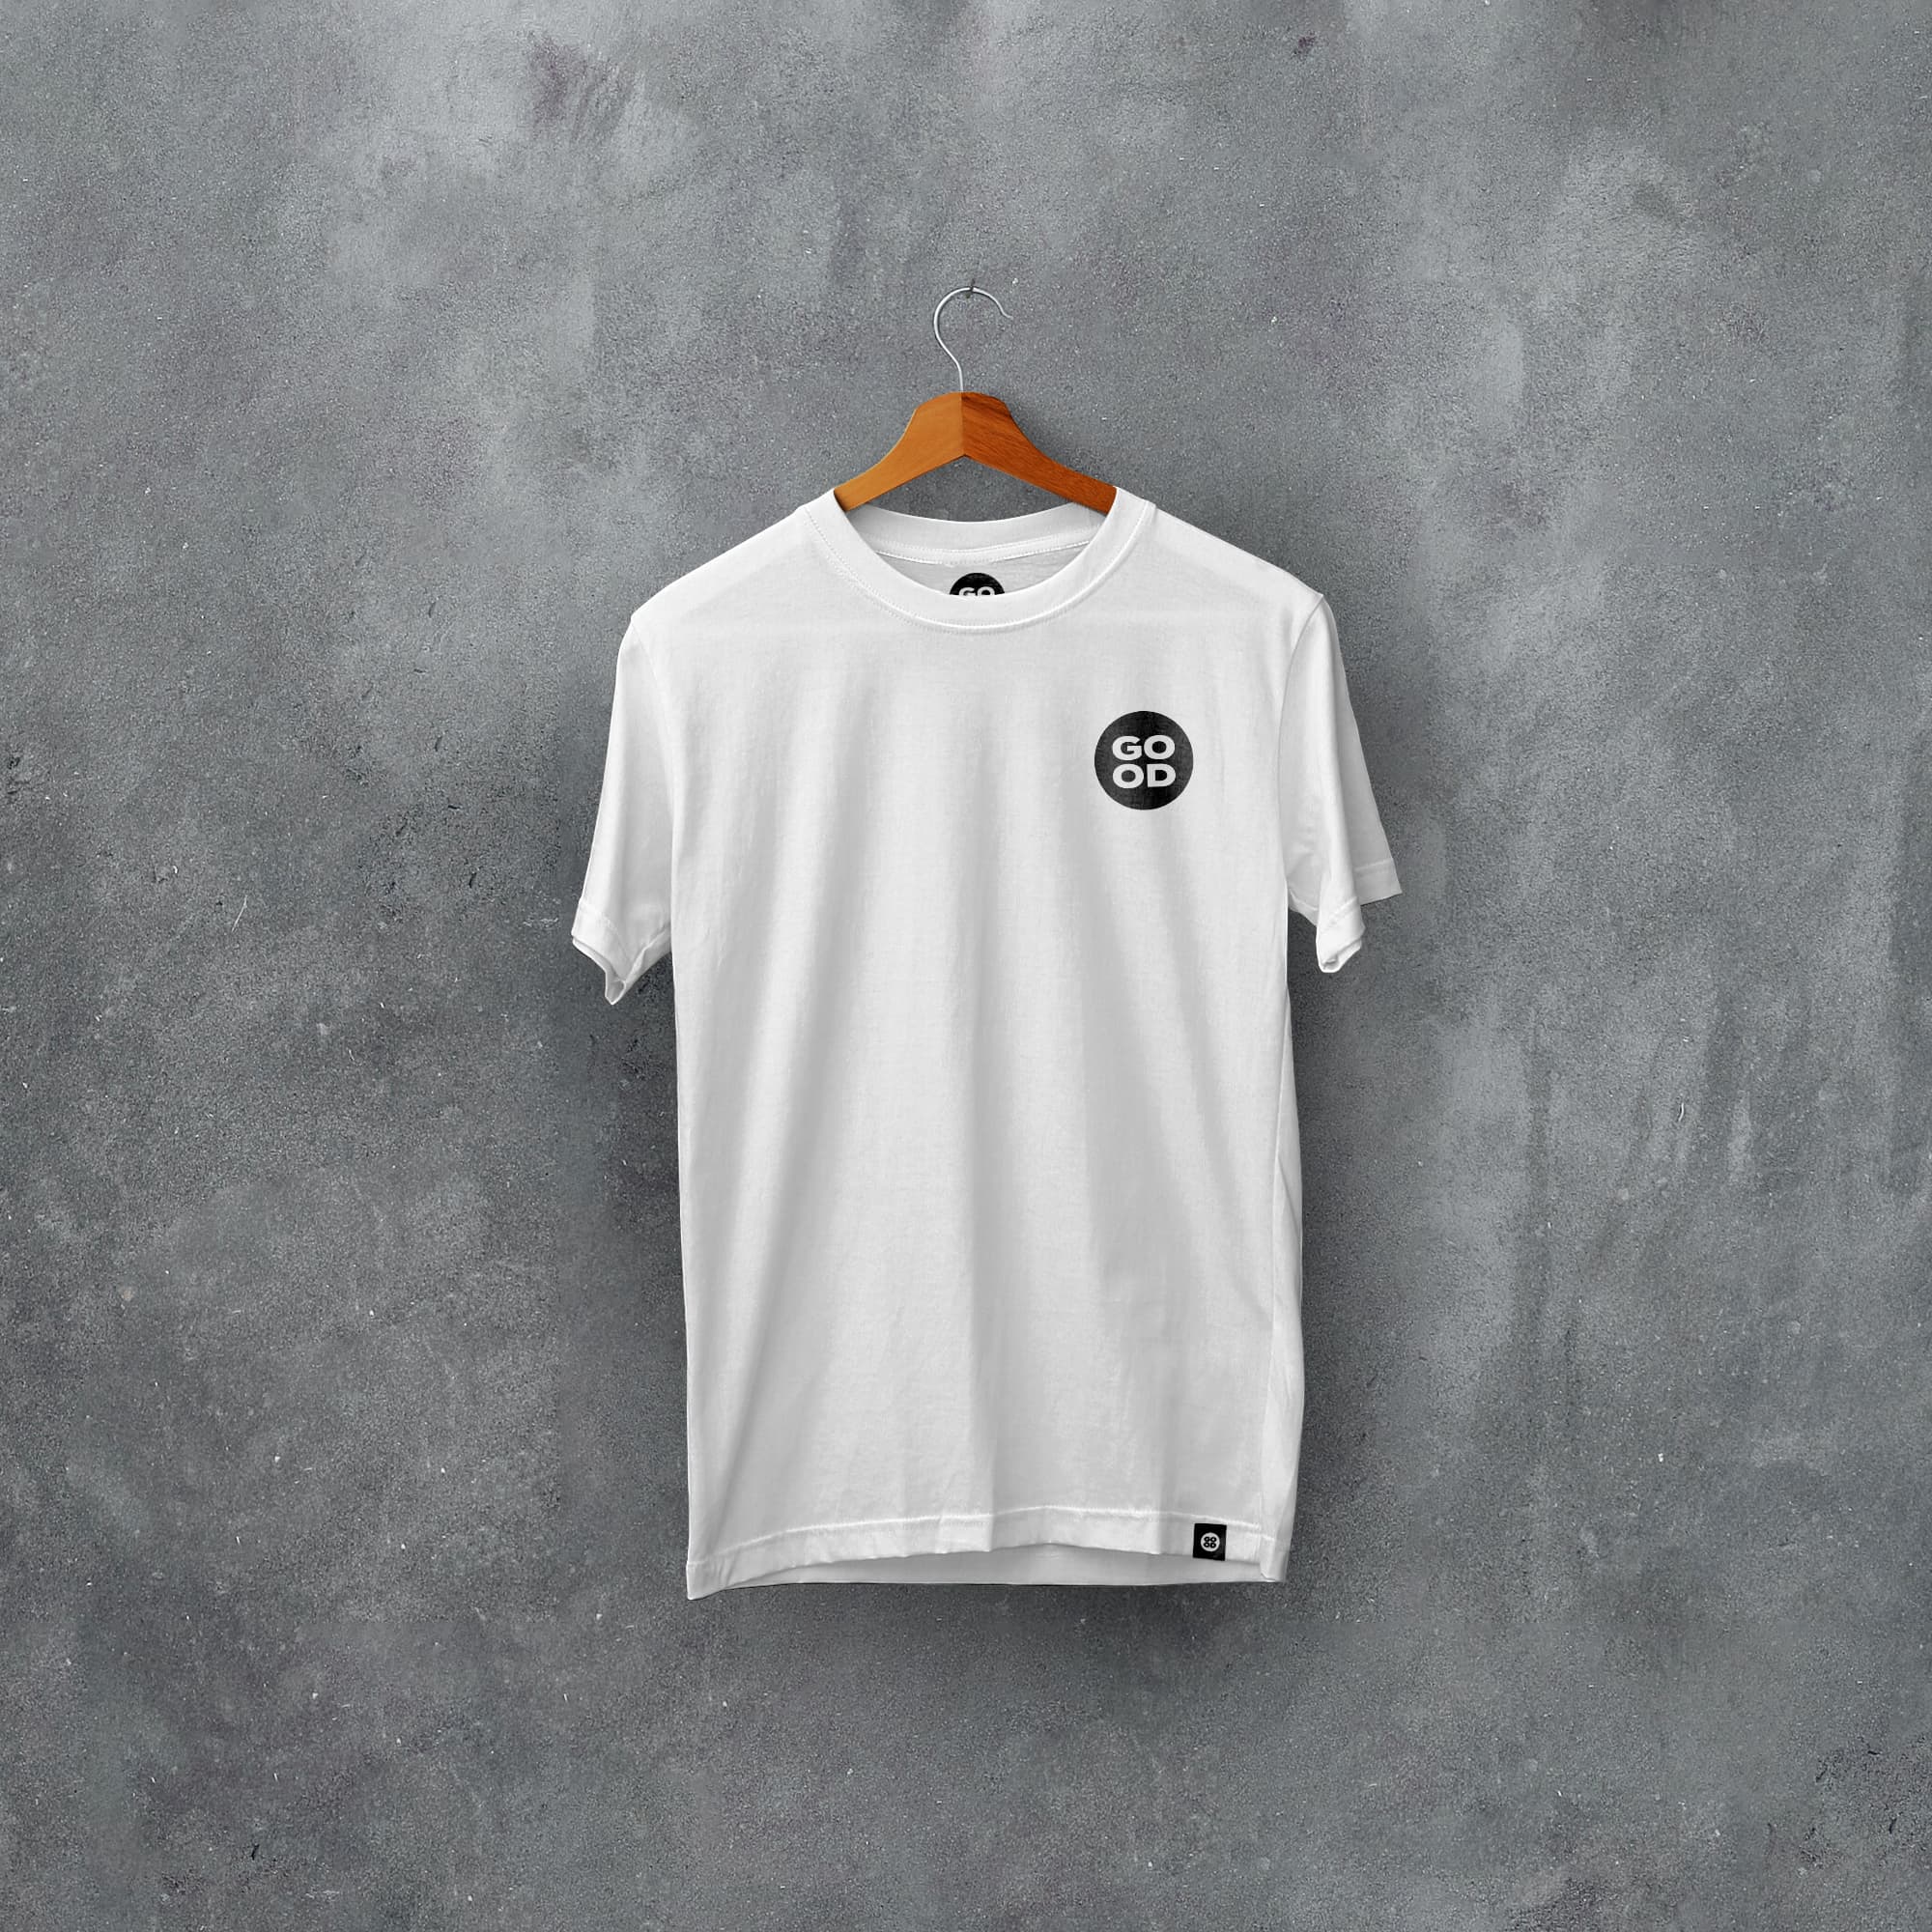 Bournemouth Classic Kits Football T-Shirt